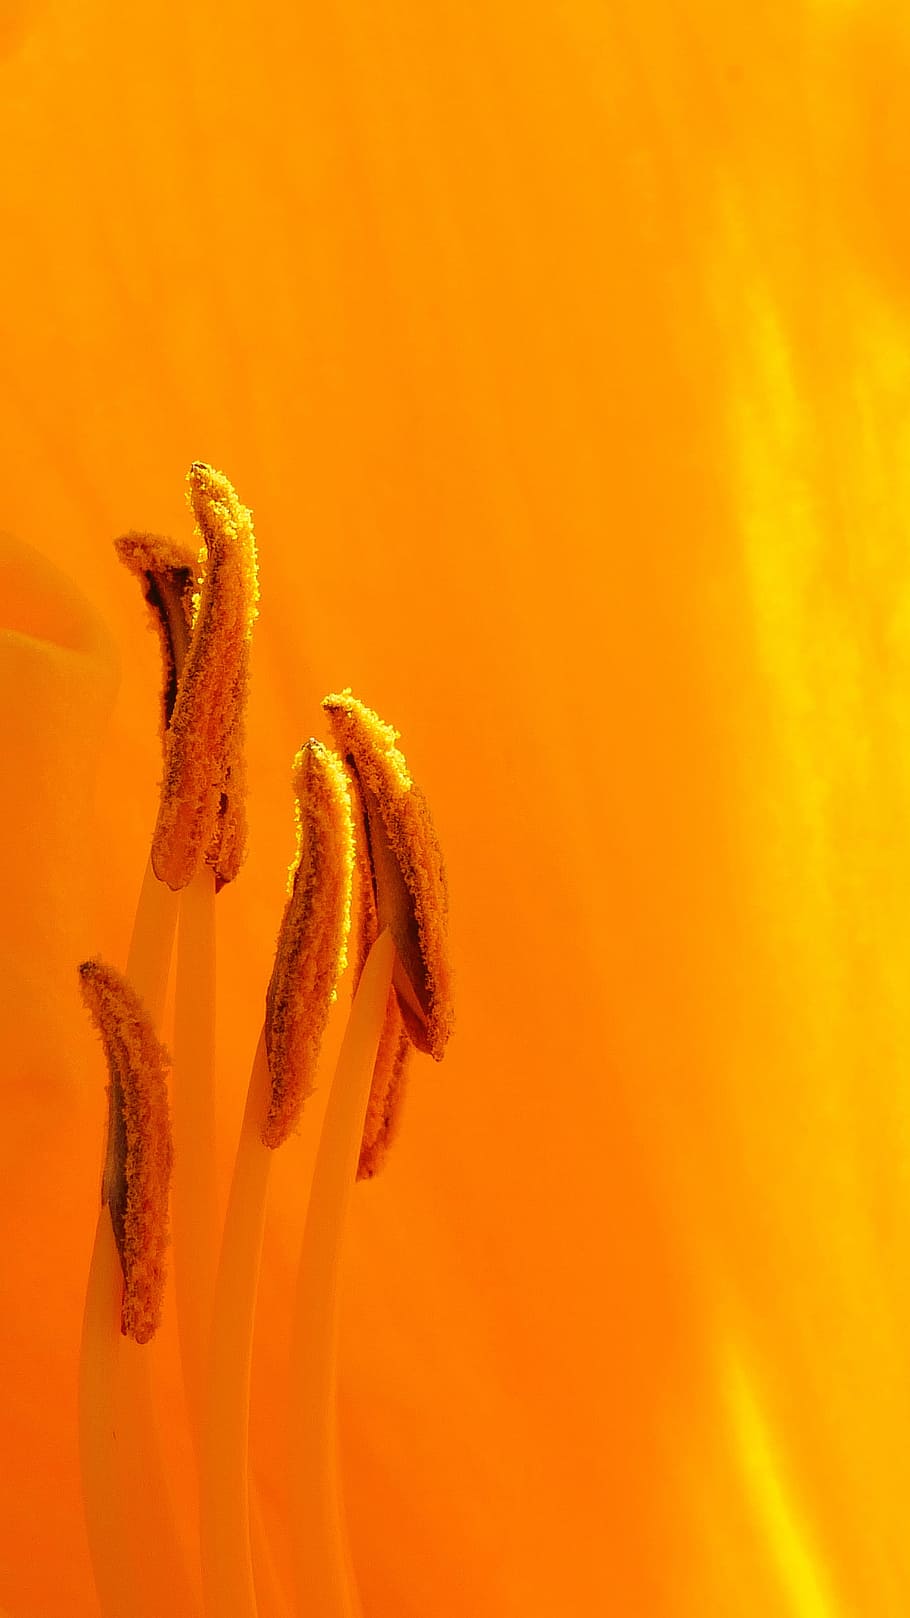 laranja, macro de peças de flor diurna, horário de verão, jardim de rutgers nj eua, fotografia macro, close-up, close-up extremo, imagens de flores, imagem de pistilo, foto de flores